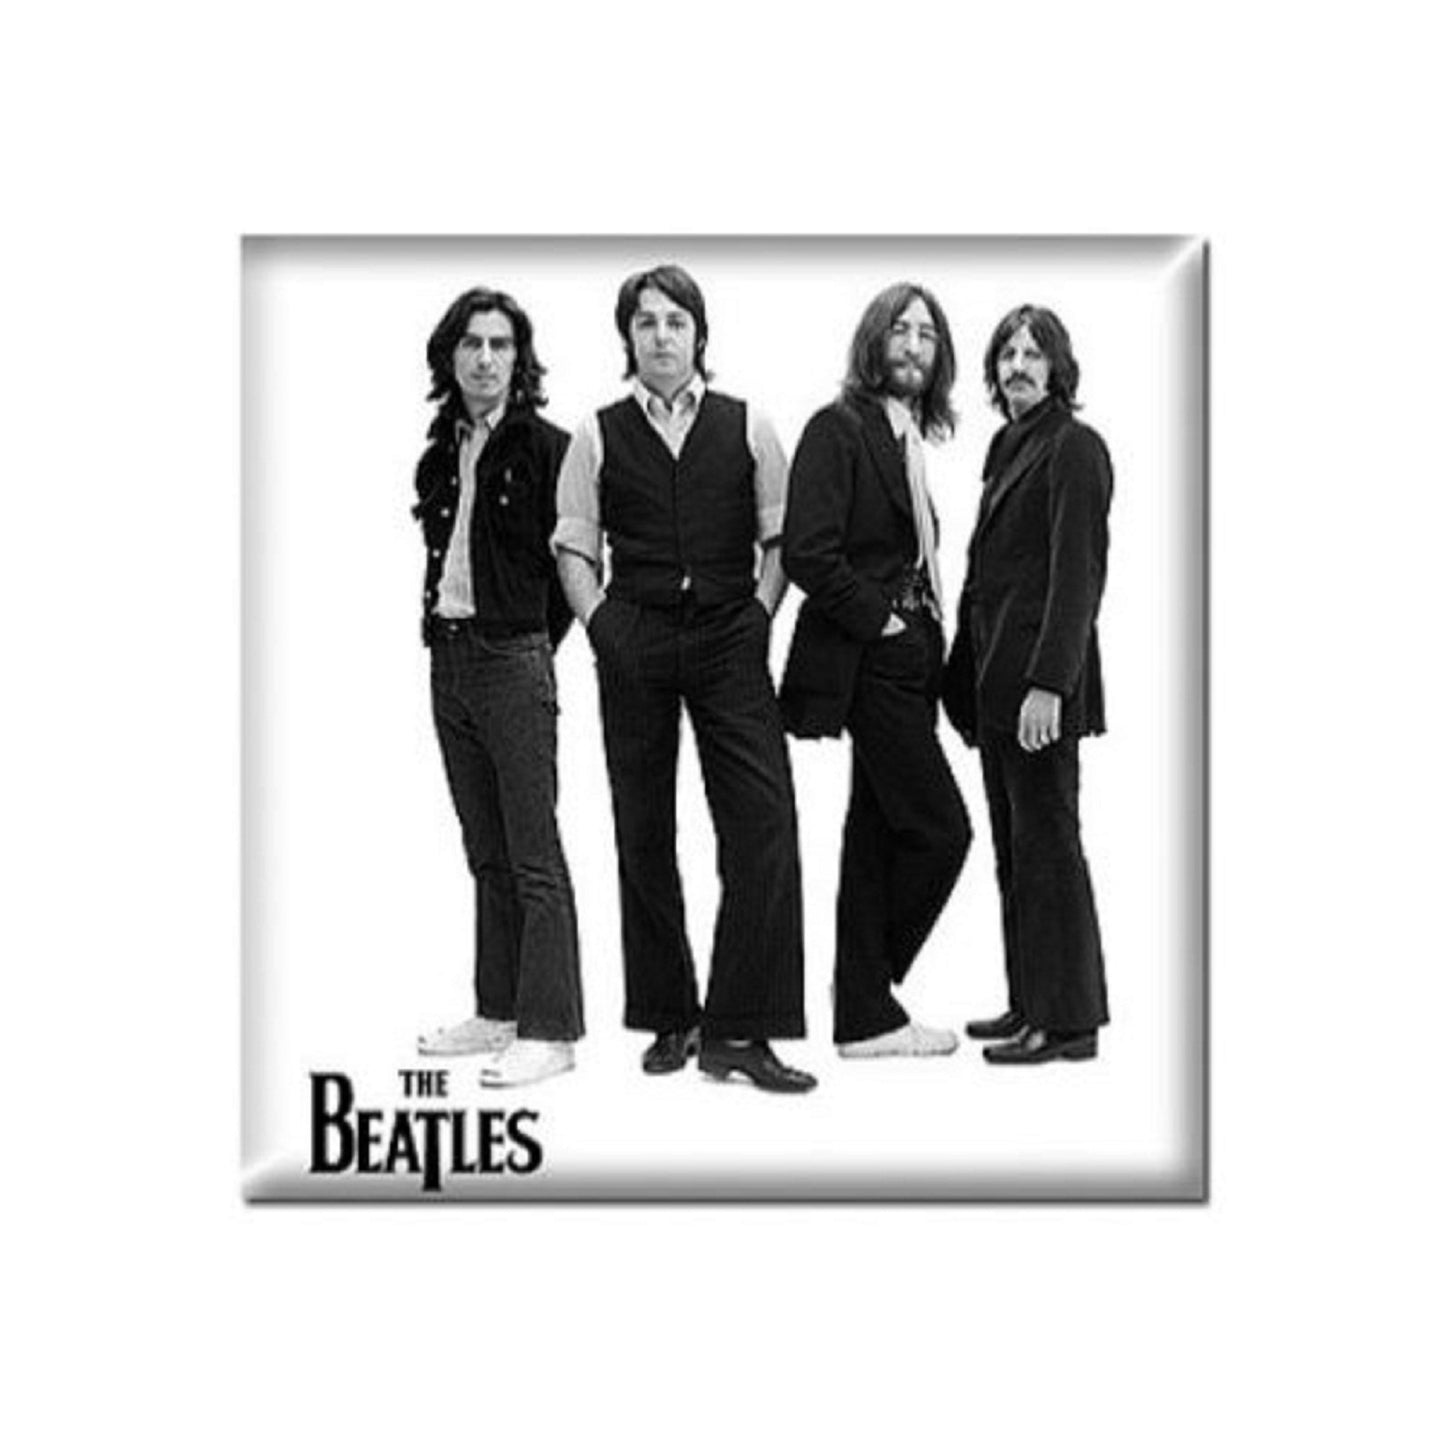 The Beatles Fridge Magnet White Iconic Image